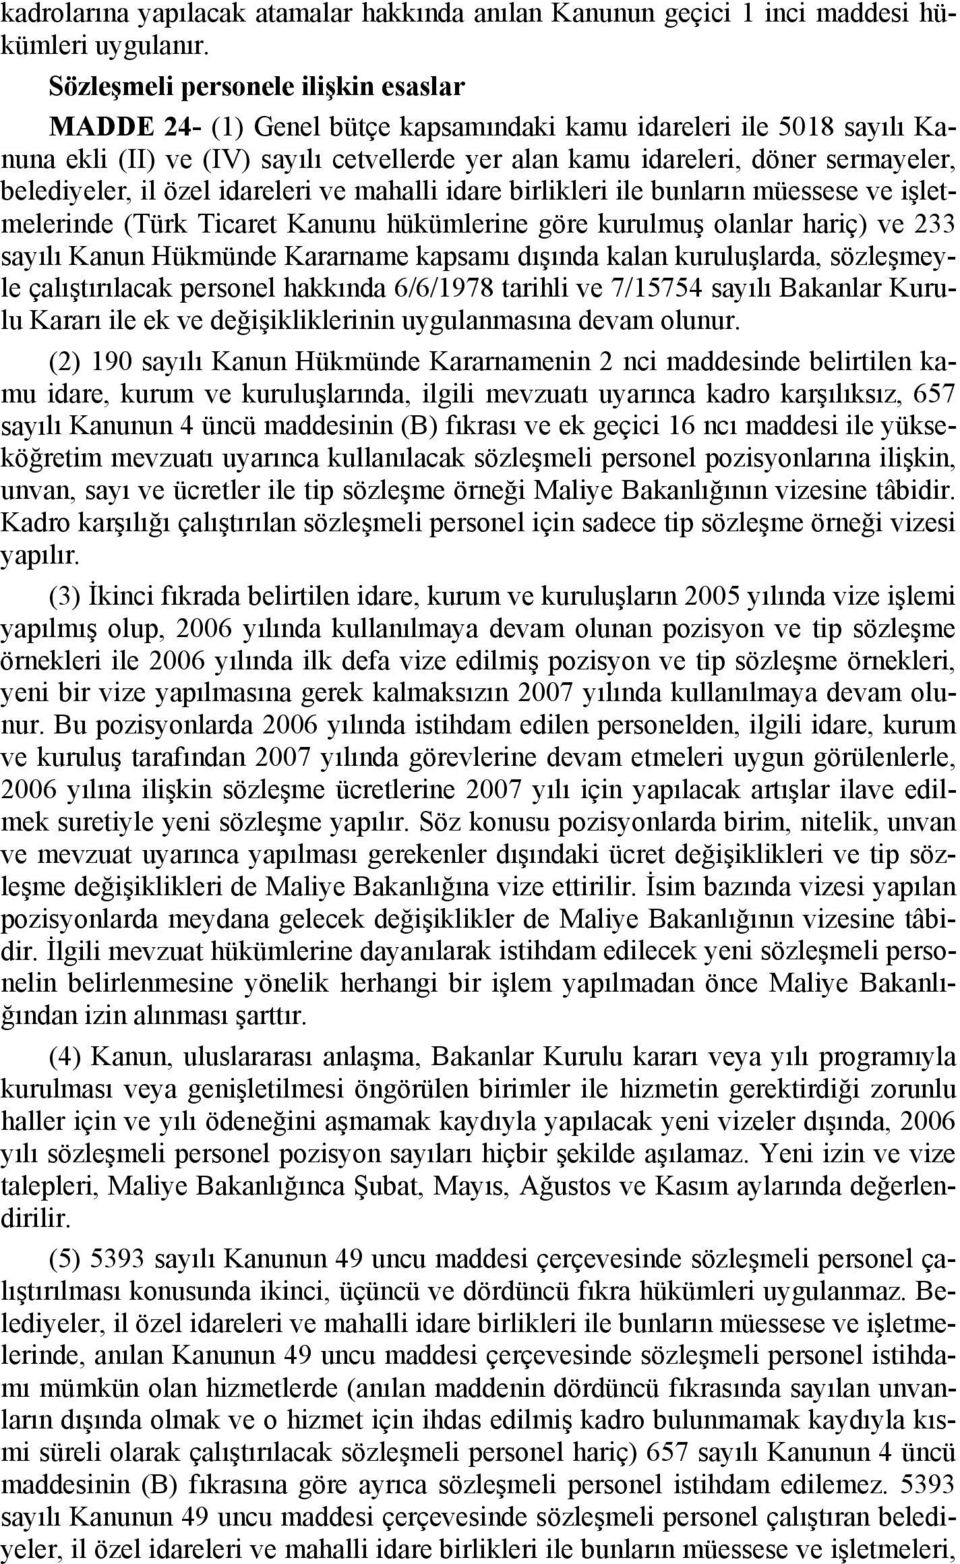 belediyeler, il özel idareleri ve mahalli idare birlikleri ile bunların müessese ve işletmelerinde (Türk Ticaret Kanunu hükümlerine göre kurulmuş olanlar hariç) ve 233 sayılı Kanun Hükmünde Kararname